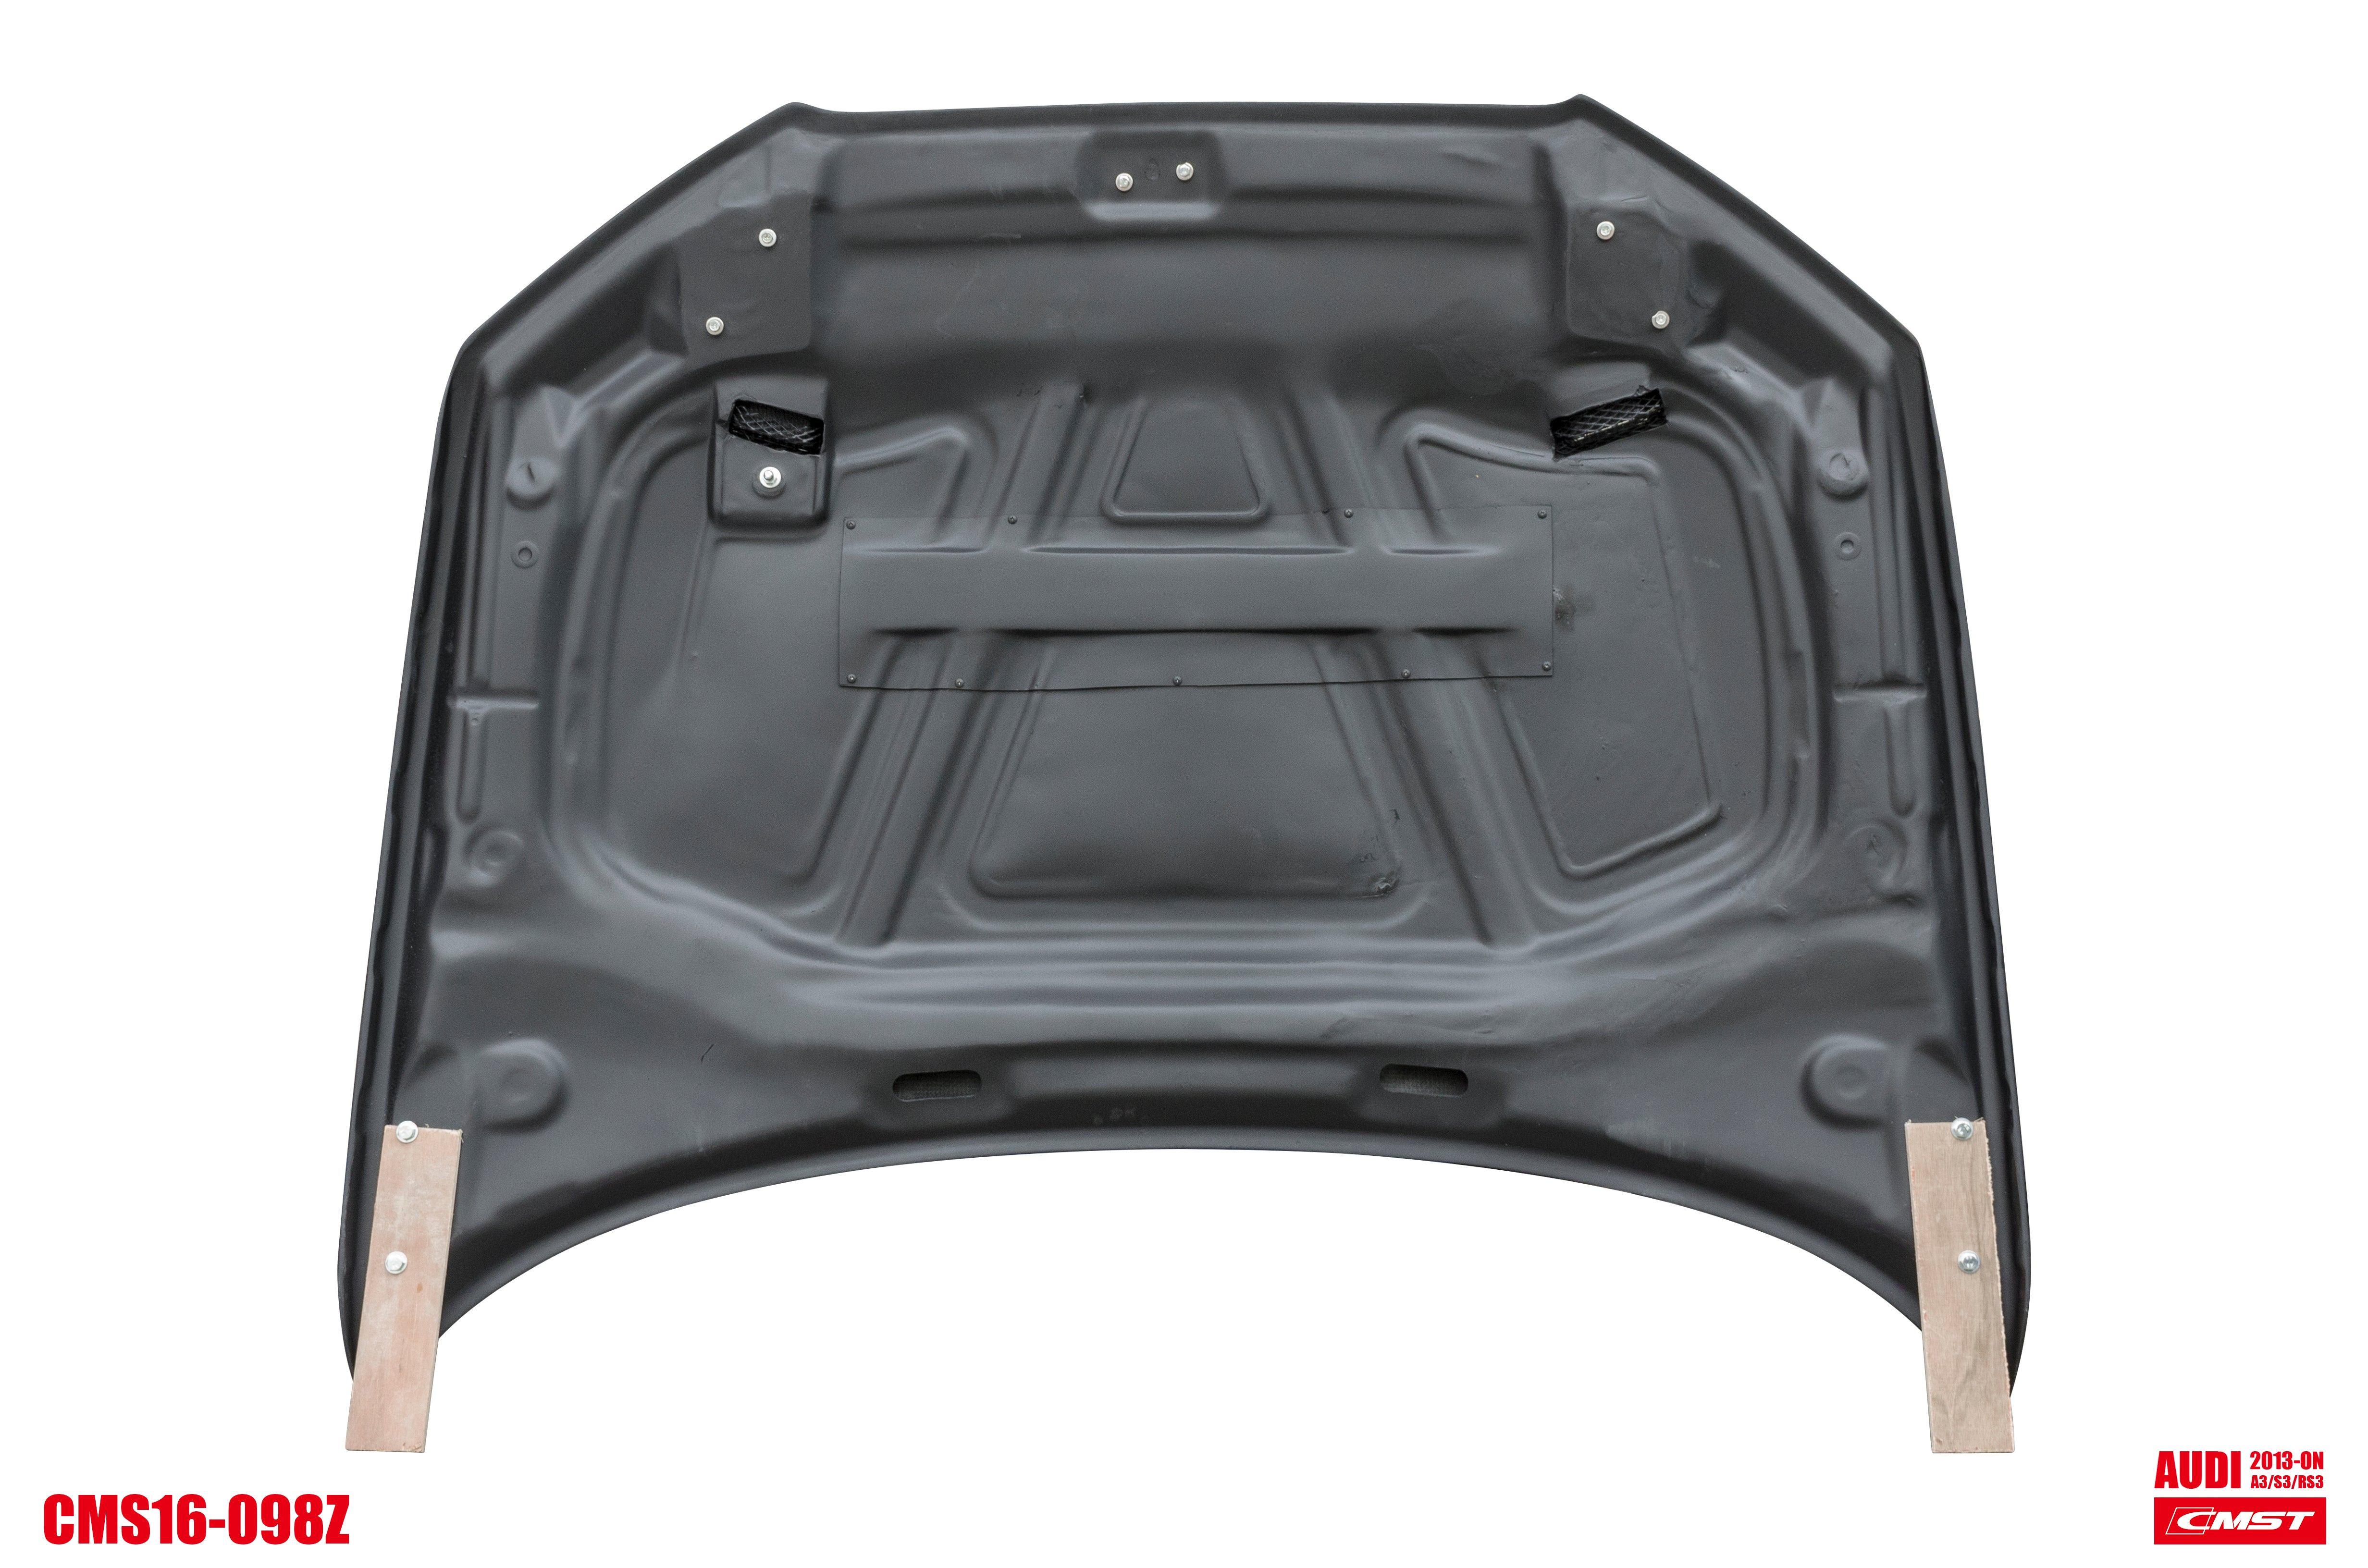 CMST Tuning Carbon Fiber Hood Bonnet Ver.4 for Audi RS3 2018-2020 & 2014-2020 A3 & A3 S Line & S3